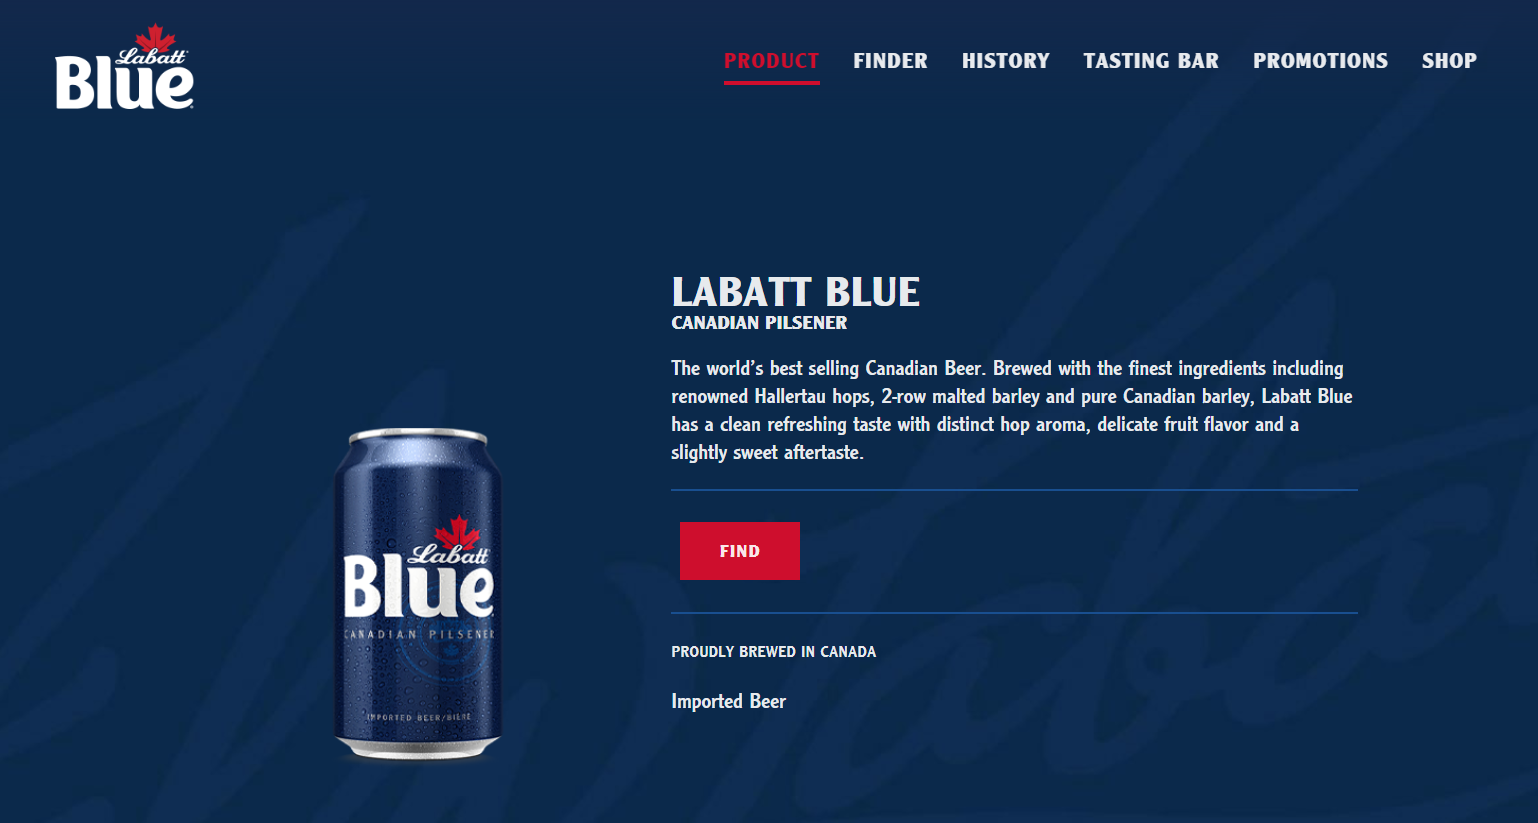 Who Owns Labatt Blue